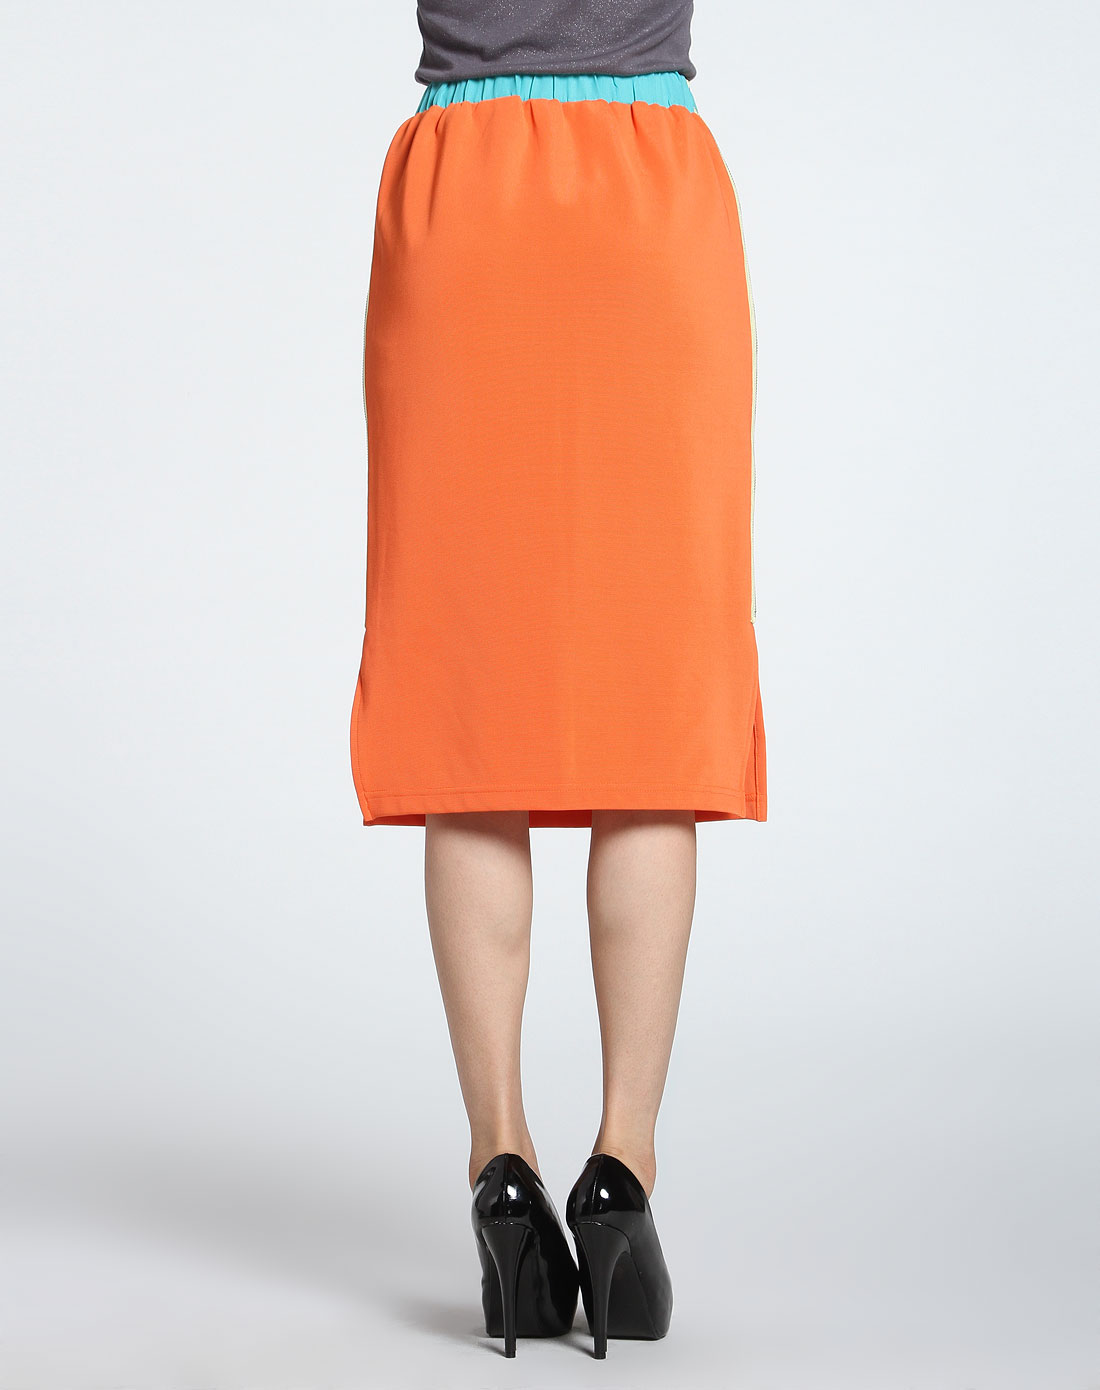 浅粉橙色两侧拉链装饰半裙